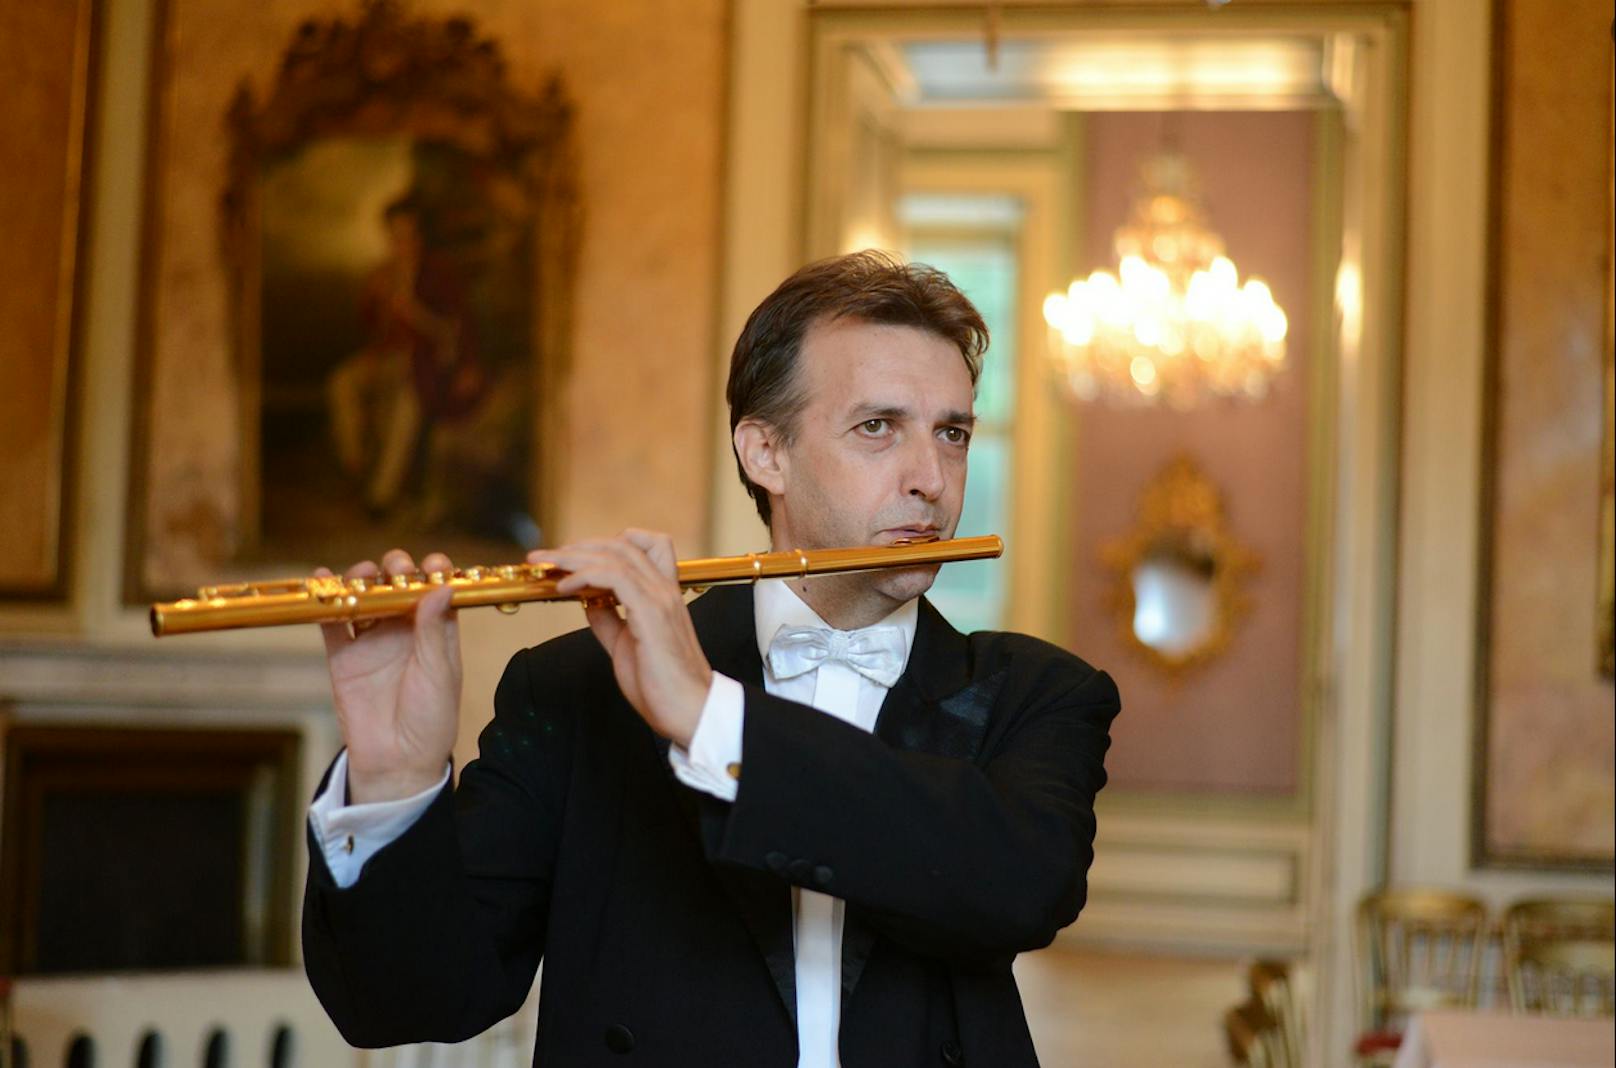 Constantin T. (59) vom Wiener Residenzorchester wurde bei einem Konzert seine wertvolle Querflöte gestohlen.